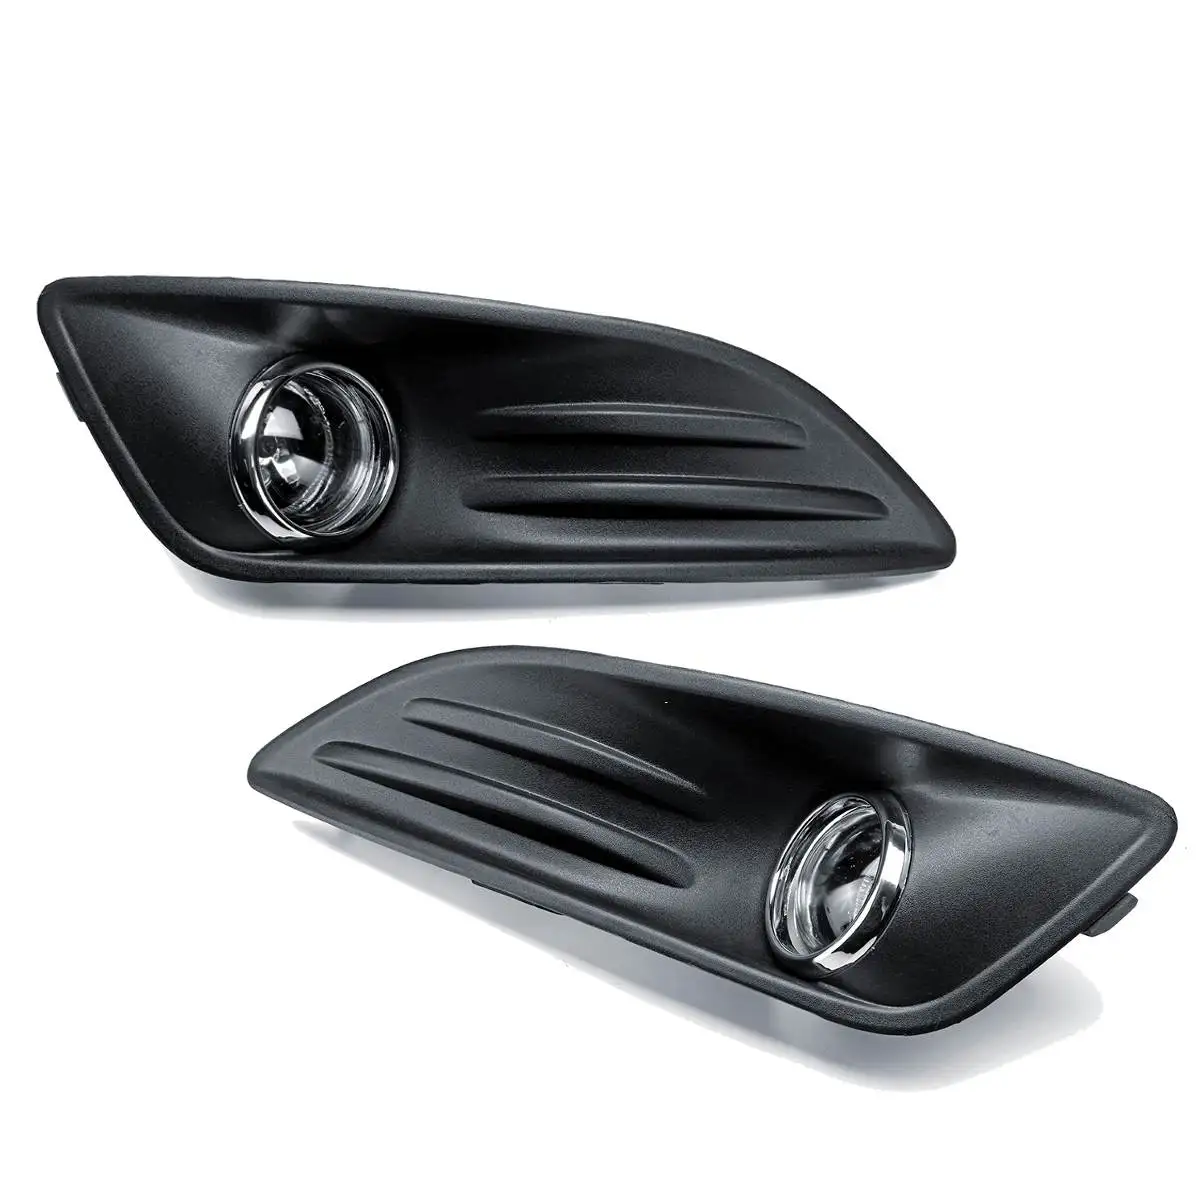 1 комплект 12 В H8 автомобильный противотуманный свет и крышка Гриль комплект для Ford Fiesta 2013- передний бампер противотуманная фара Drl дальнего света Выключатель проводки